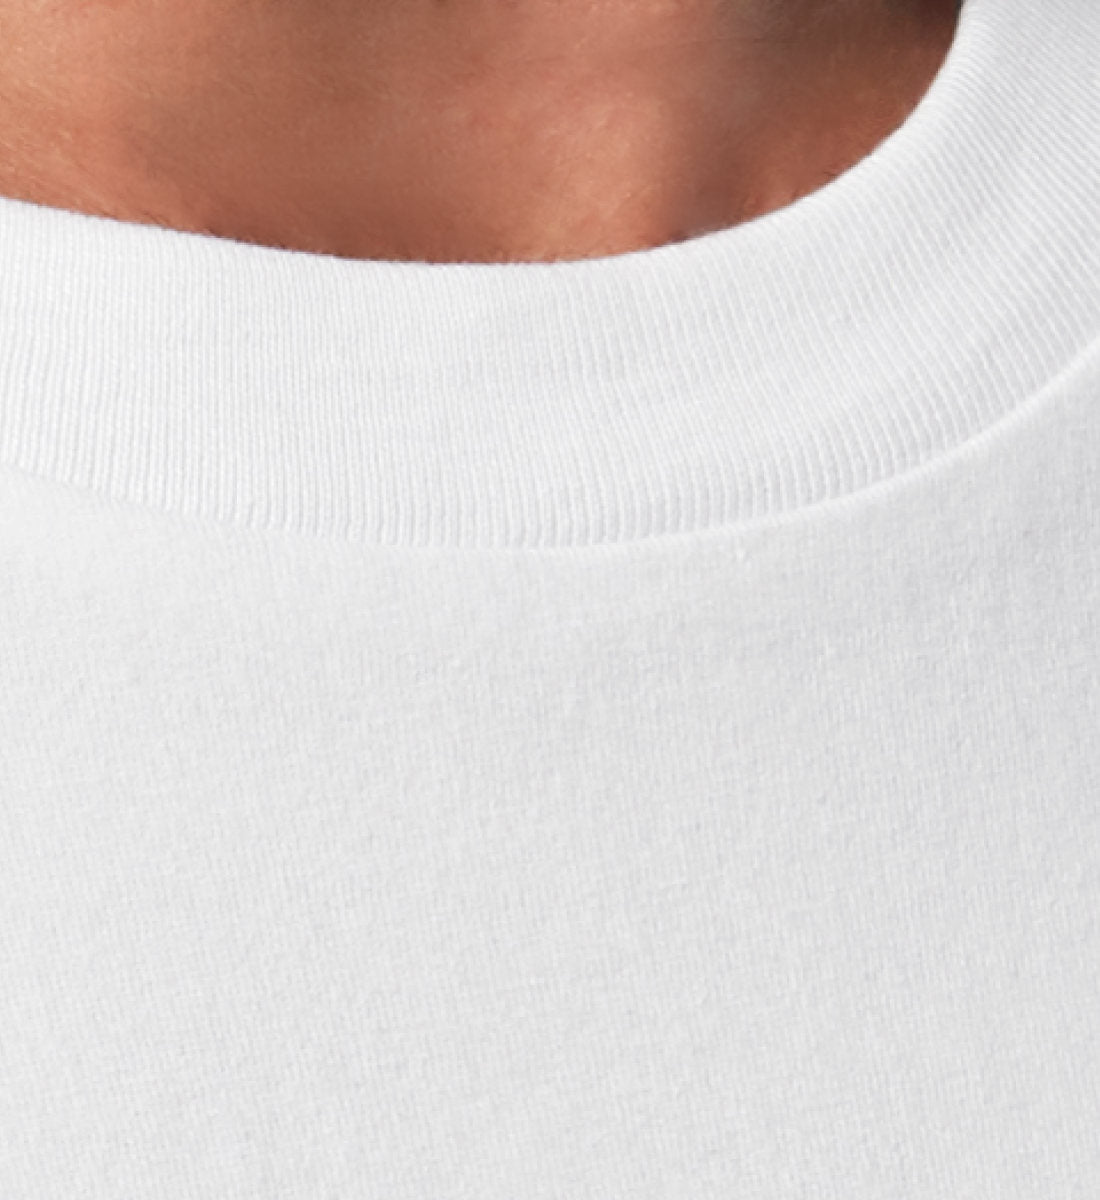 Weißes T-Shirt Unisex Relaxed Fit für Frauen und Männer bedruckt mit dem Design der Roger Rockawoo Kollektion Engelszahl 888